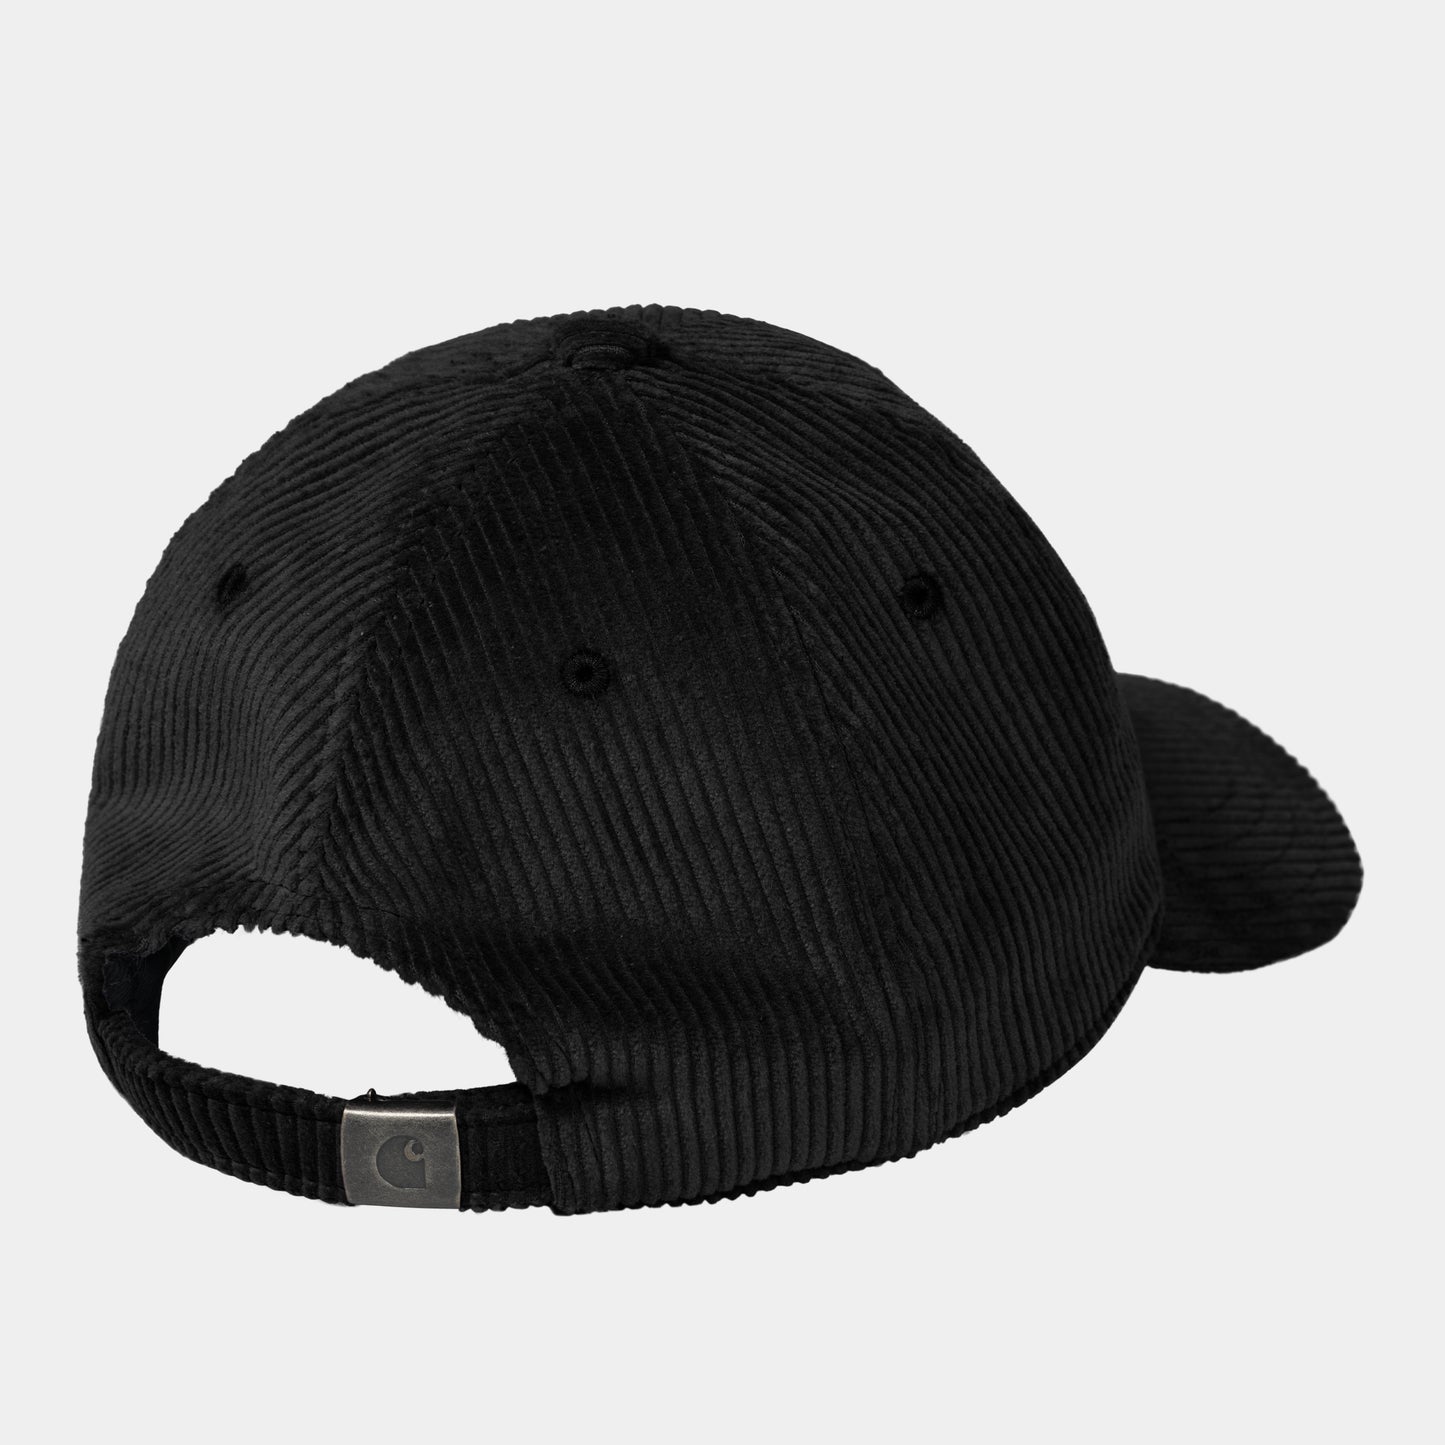 Harlem Cap - Black